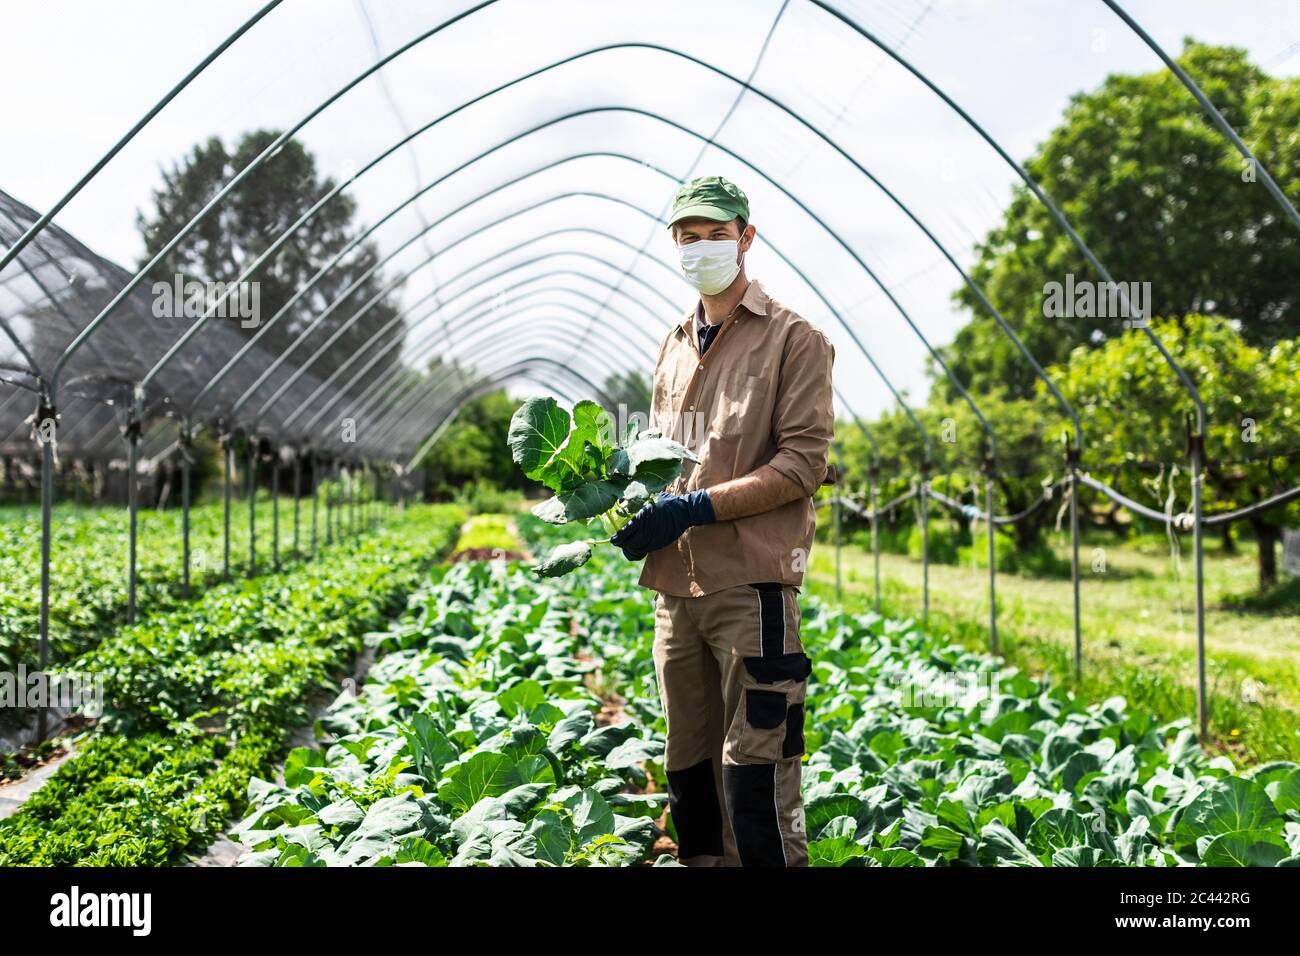 Bauer mit Schutzmaske im Gewächshaus mit Zucchini-Pflanzen Stockfotografie  - Alamy